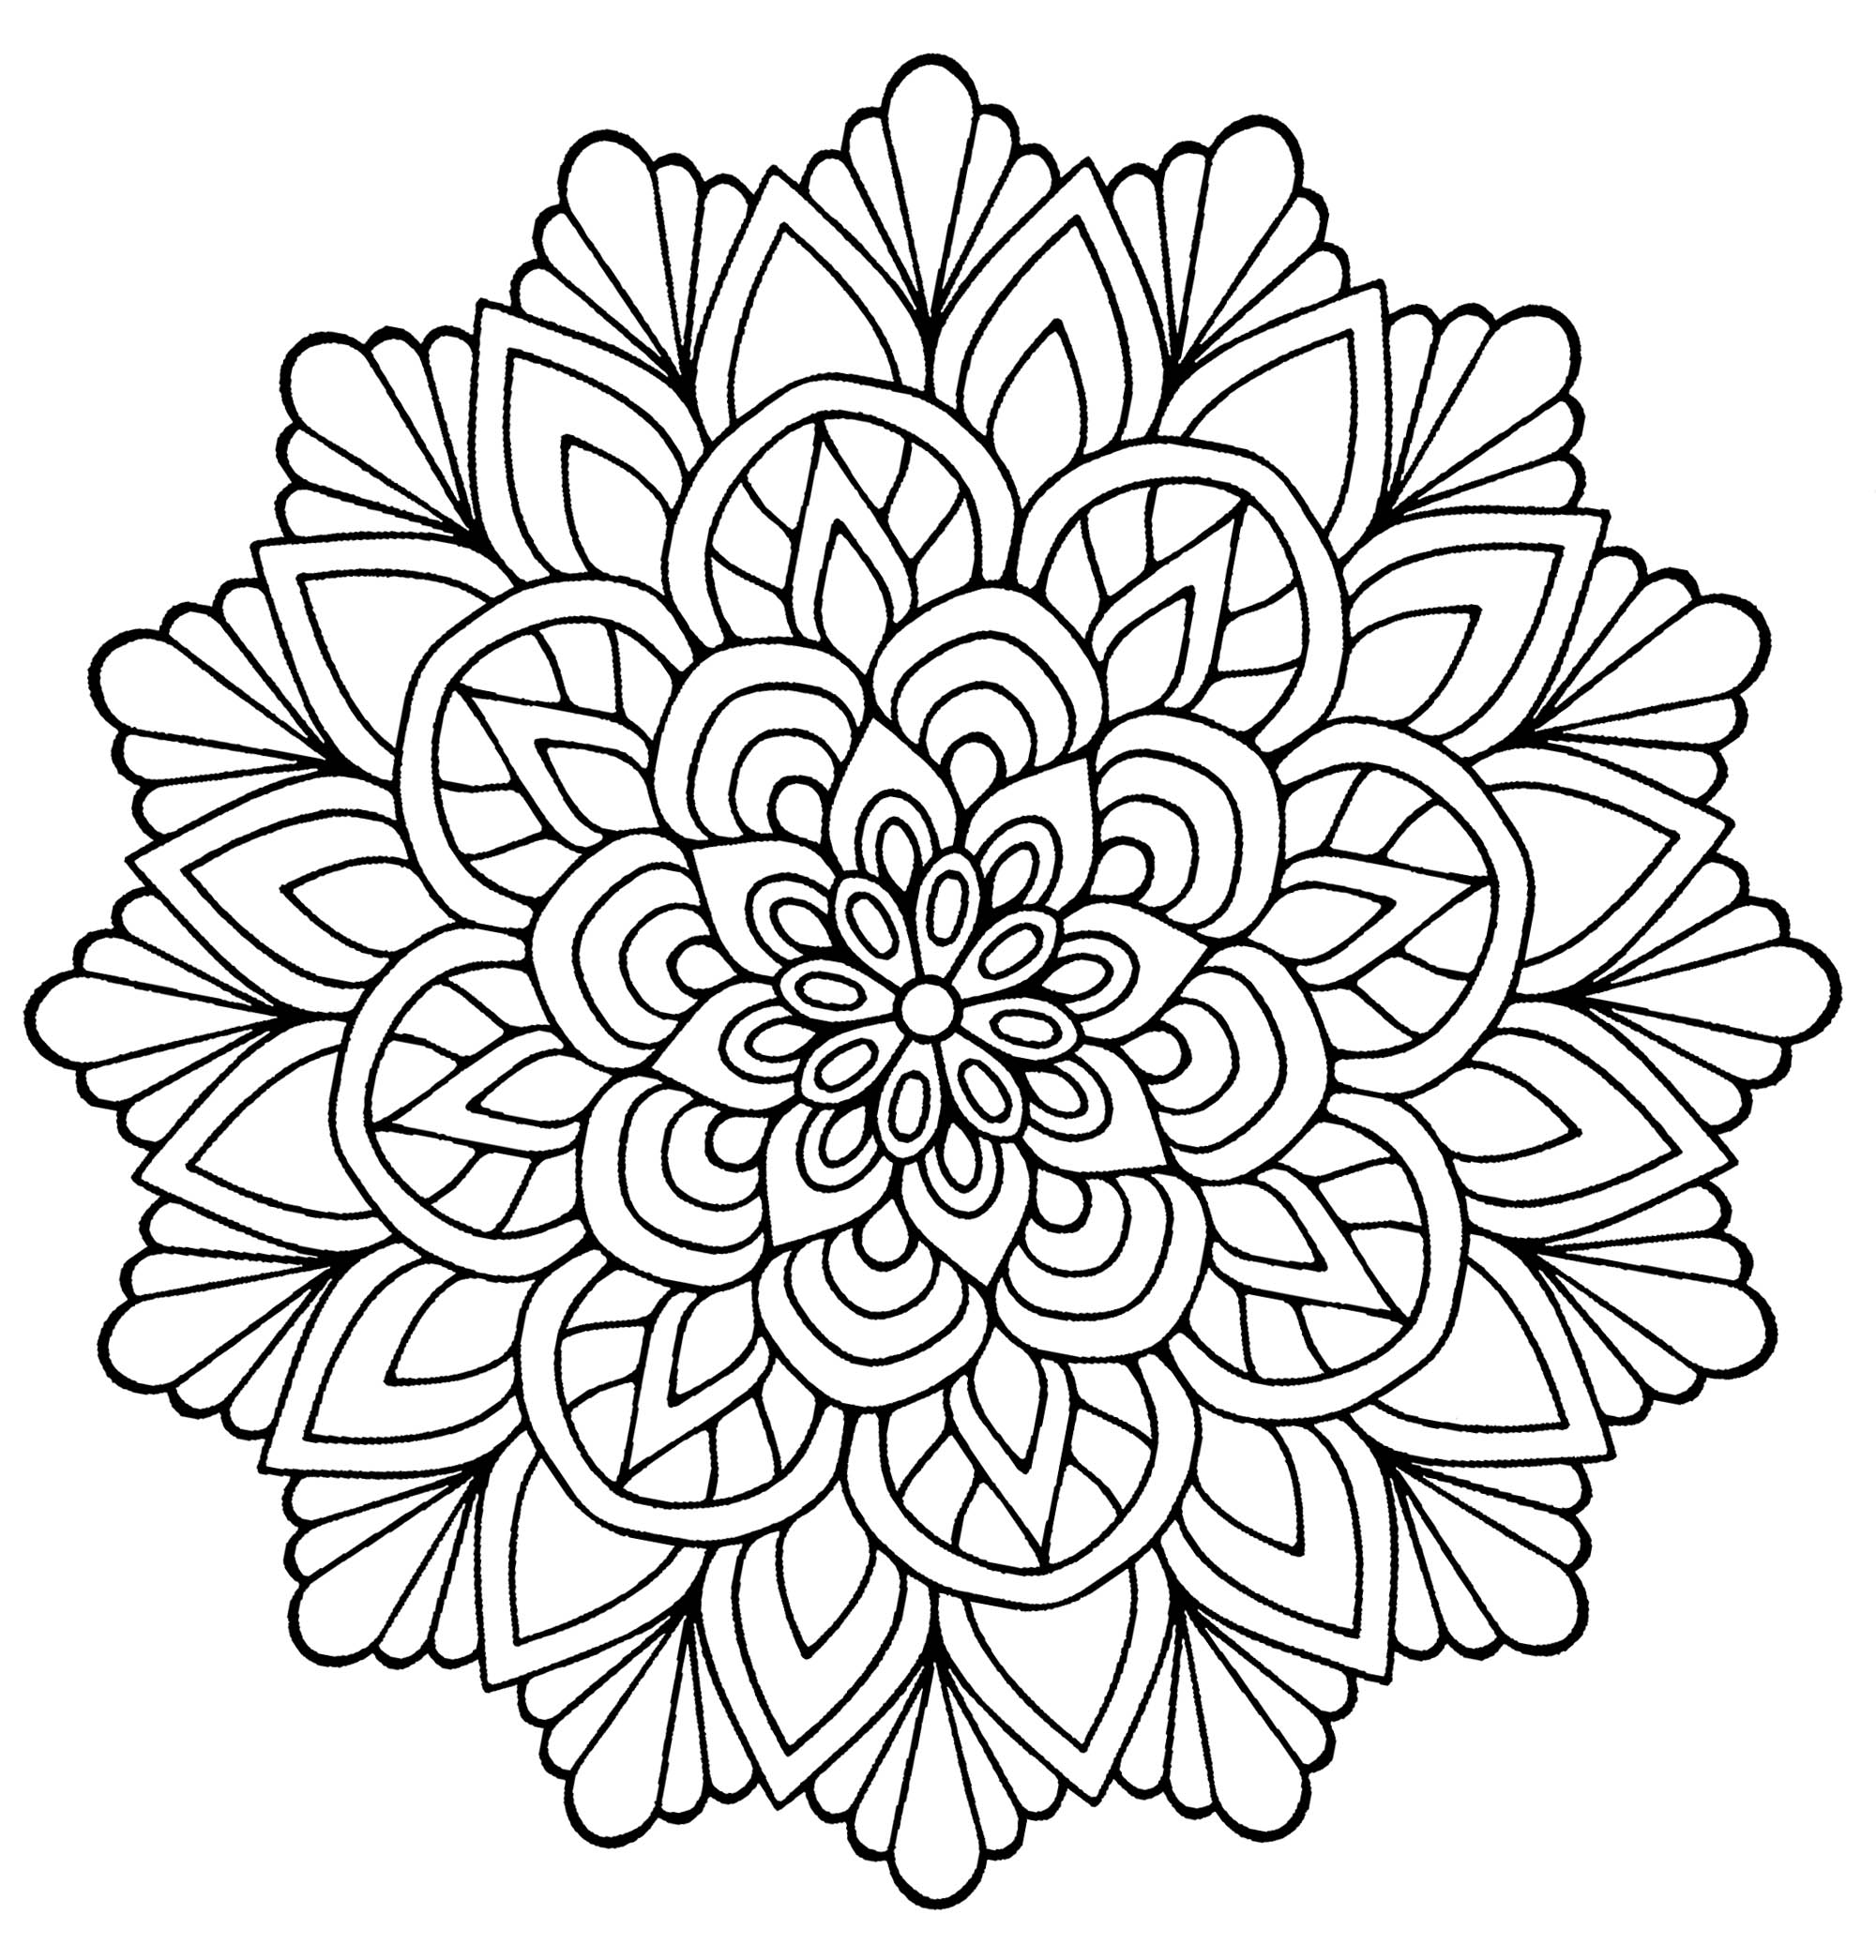 Der Zweck eines Mandalas ist es, zu sich selbst zu finden, loszulassen und den äußeren Trubel zu vergessen. Wenn Sie ein Mandala ausmalen, haben Sie die Möglichkeit, sich auf das Wesentliche zu konzentrieren. Das ist bei diesem schönen Mandala mit Blättern und Blütenblättern der Fall.